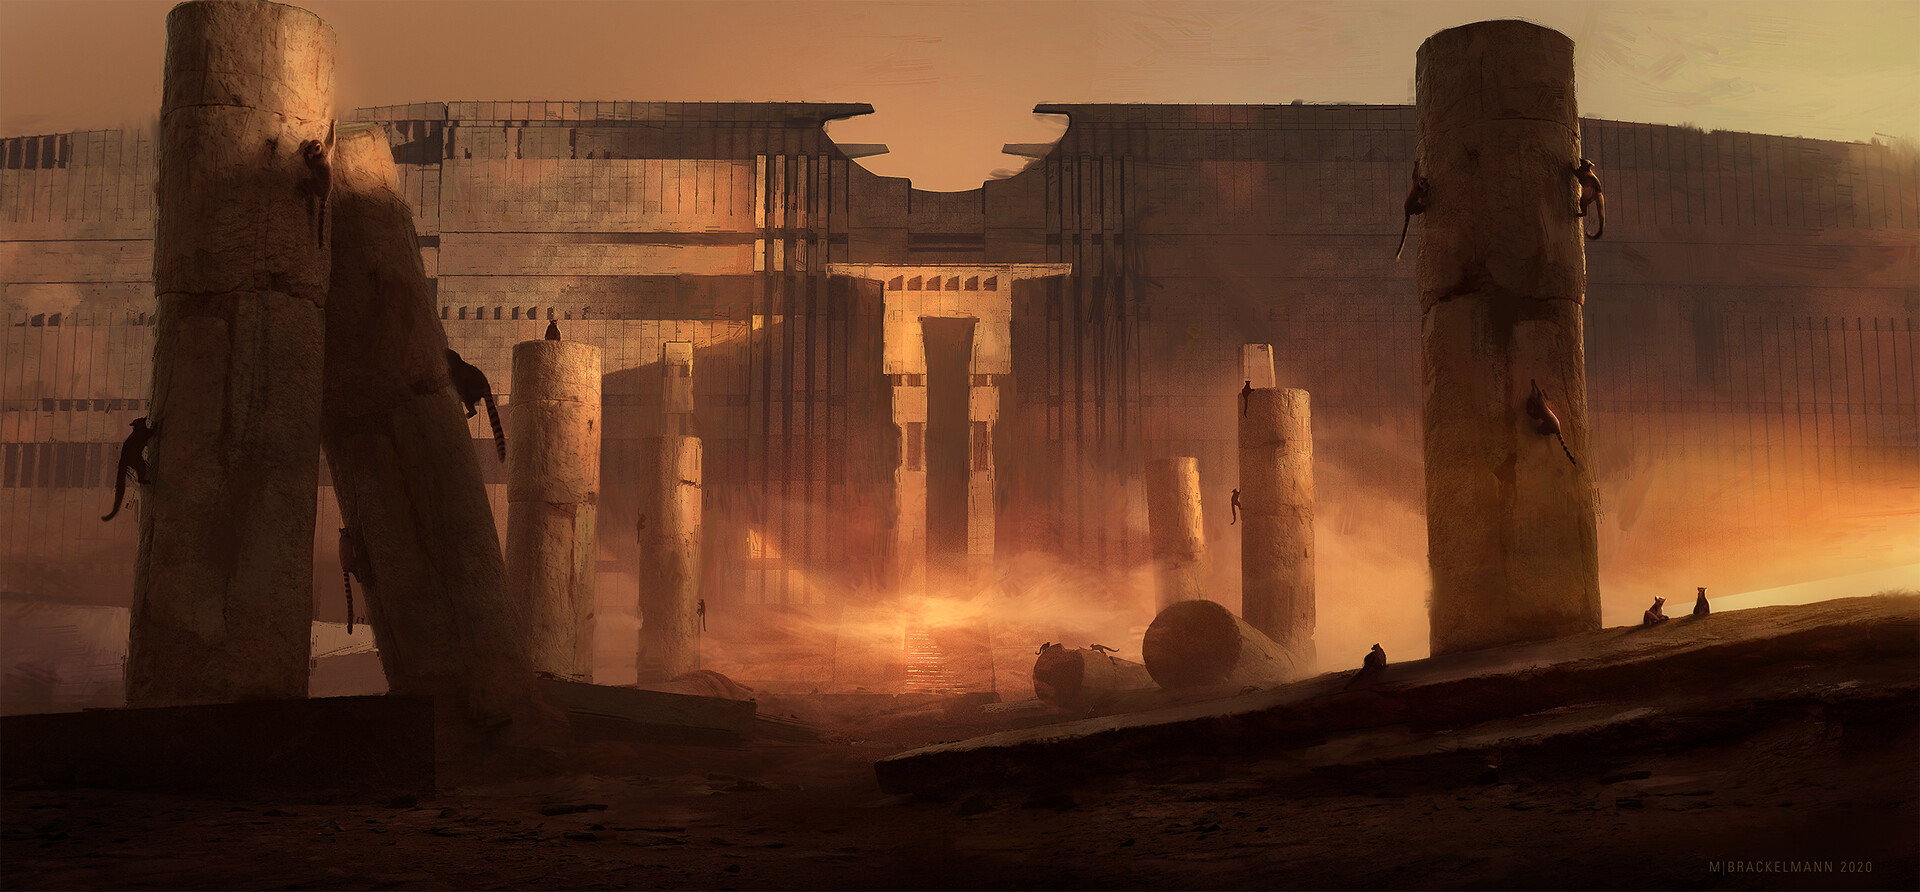 Sci-Fi храм в пустыне. Пустынный храм концепт. Талос пустынный храм. Пустынный храм Египет пещера.